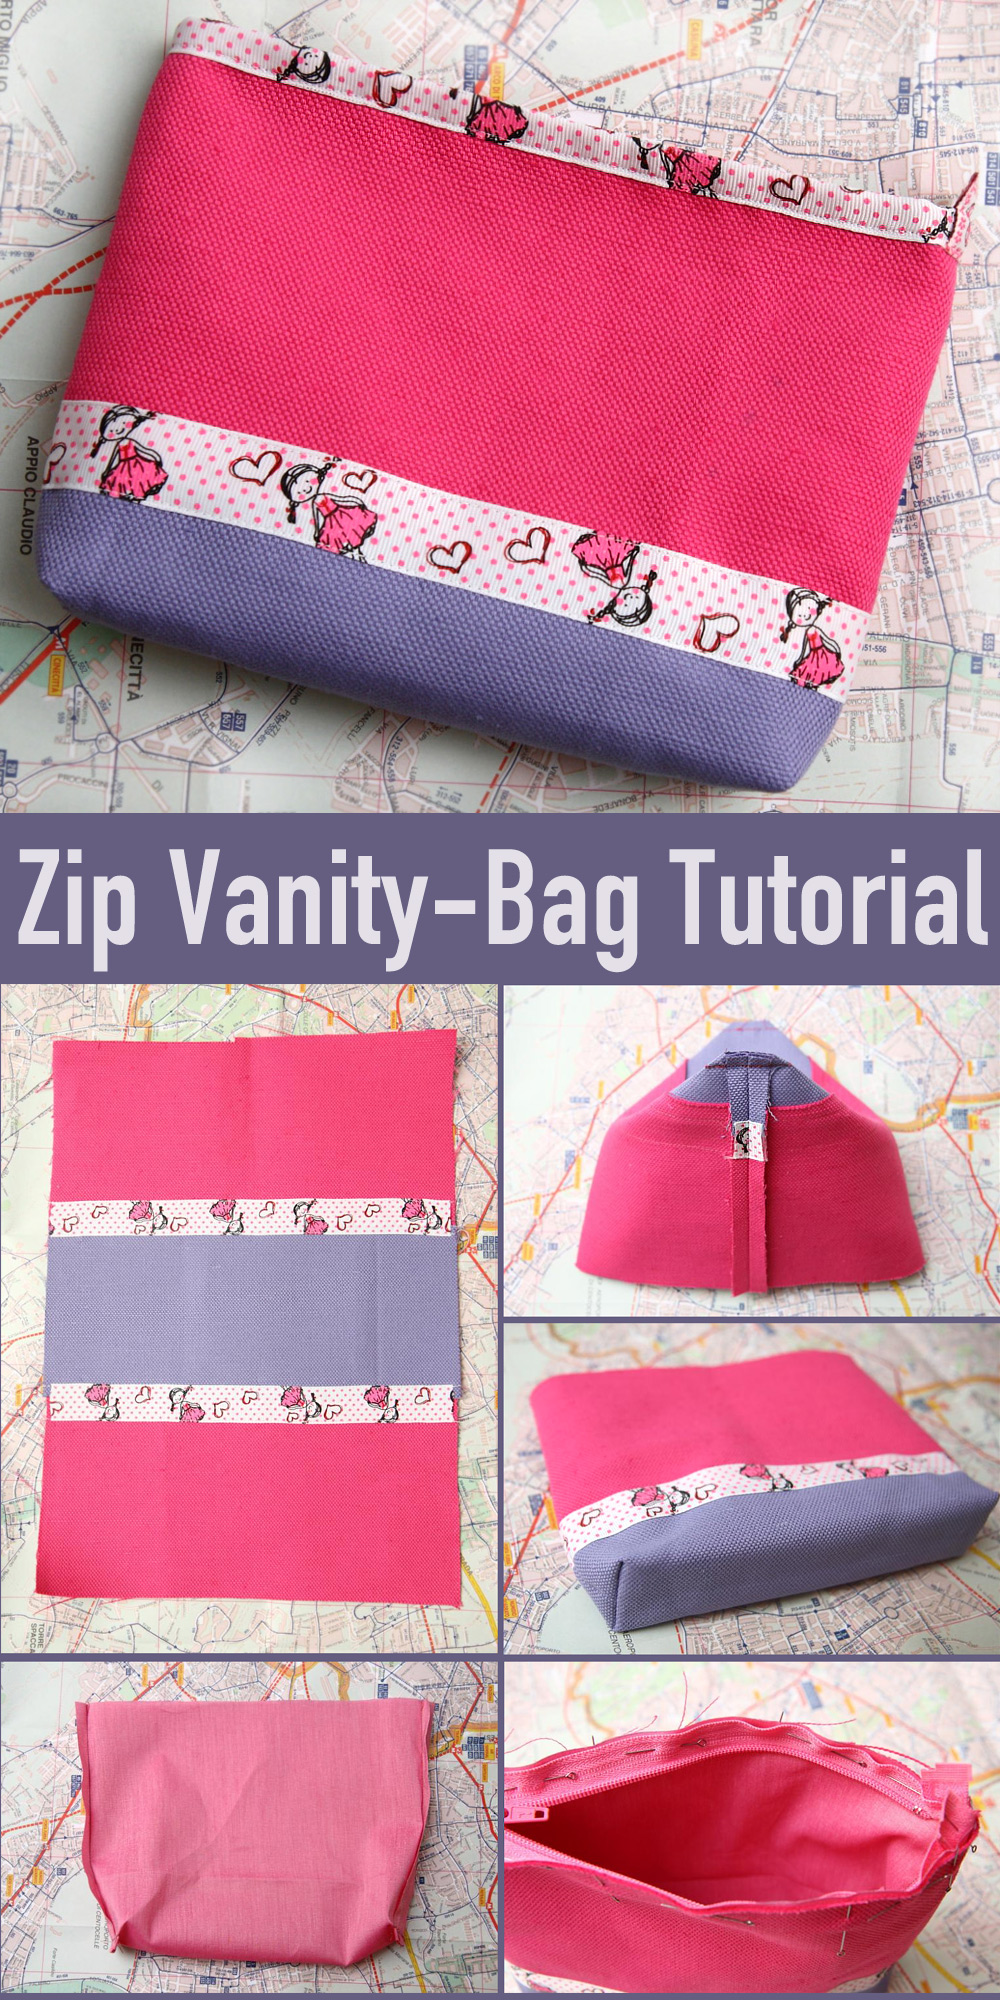 Zip Vanity-Bag Tutorial & Pattern